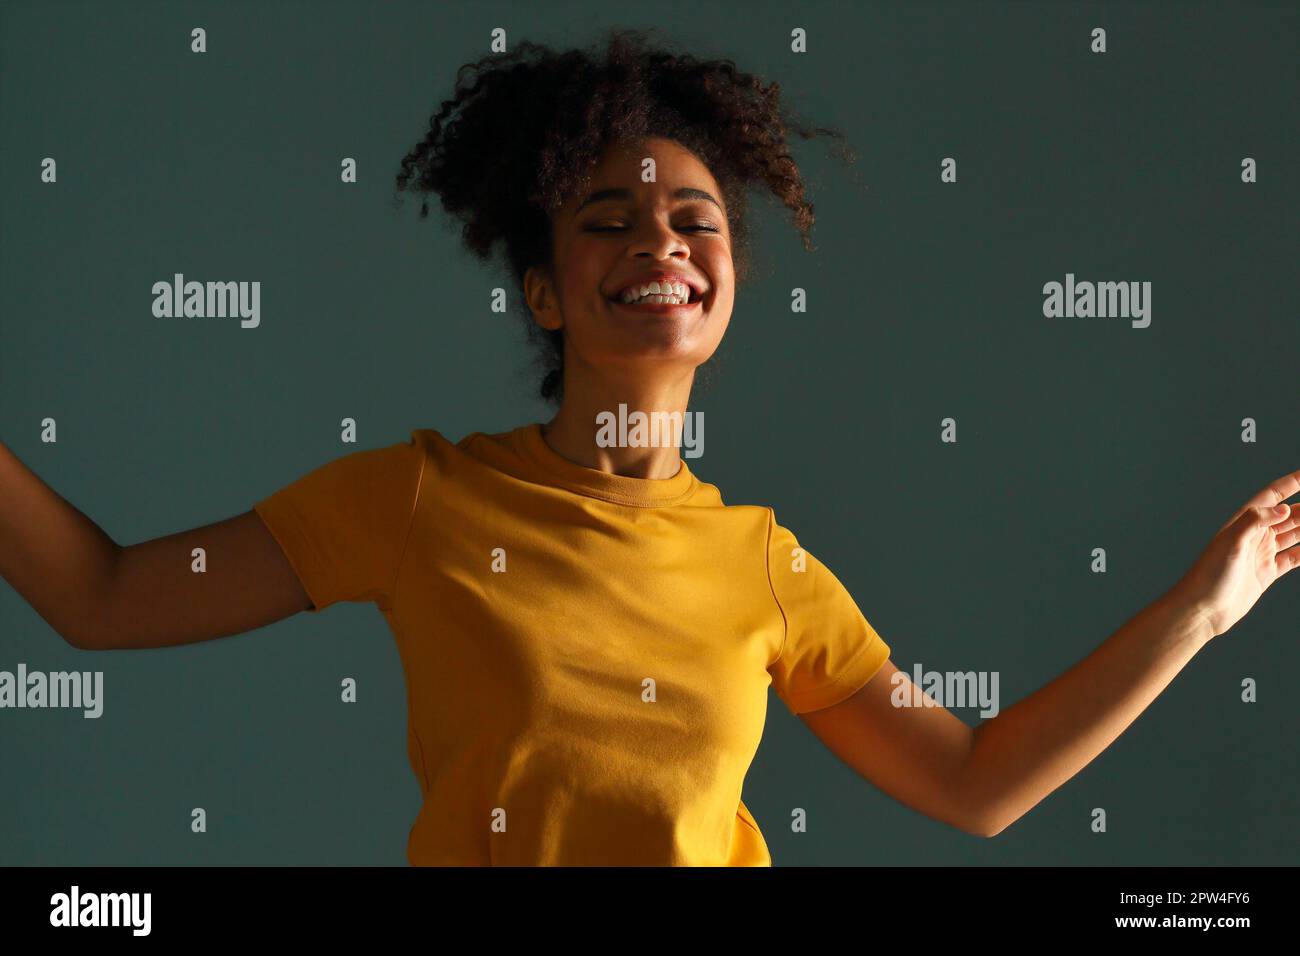 Bella donna di etnia afro-americana con pelle scura e bella in maglietta gialla che alza la mano nel saluto mentre guarda in macchina fotografica con un sorriso piacevole Foto Stock